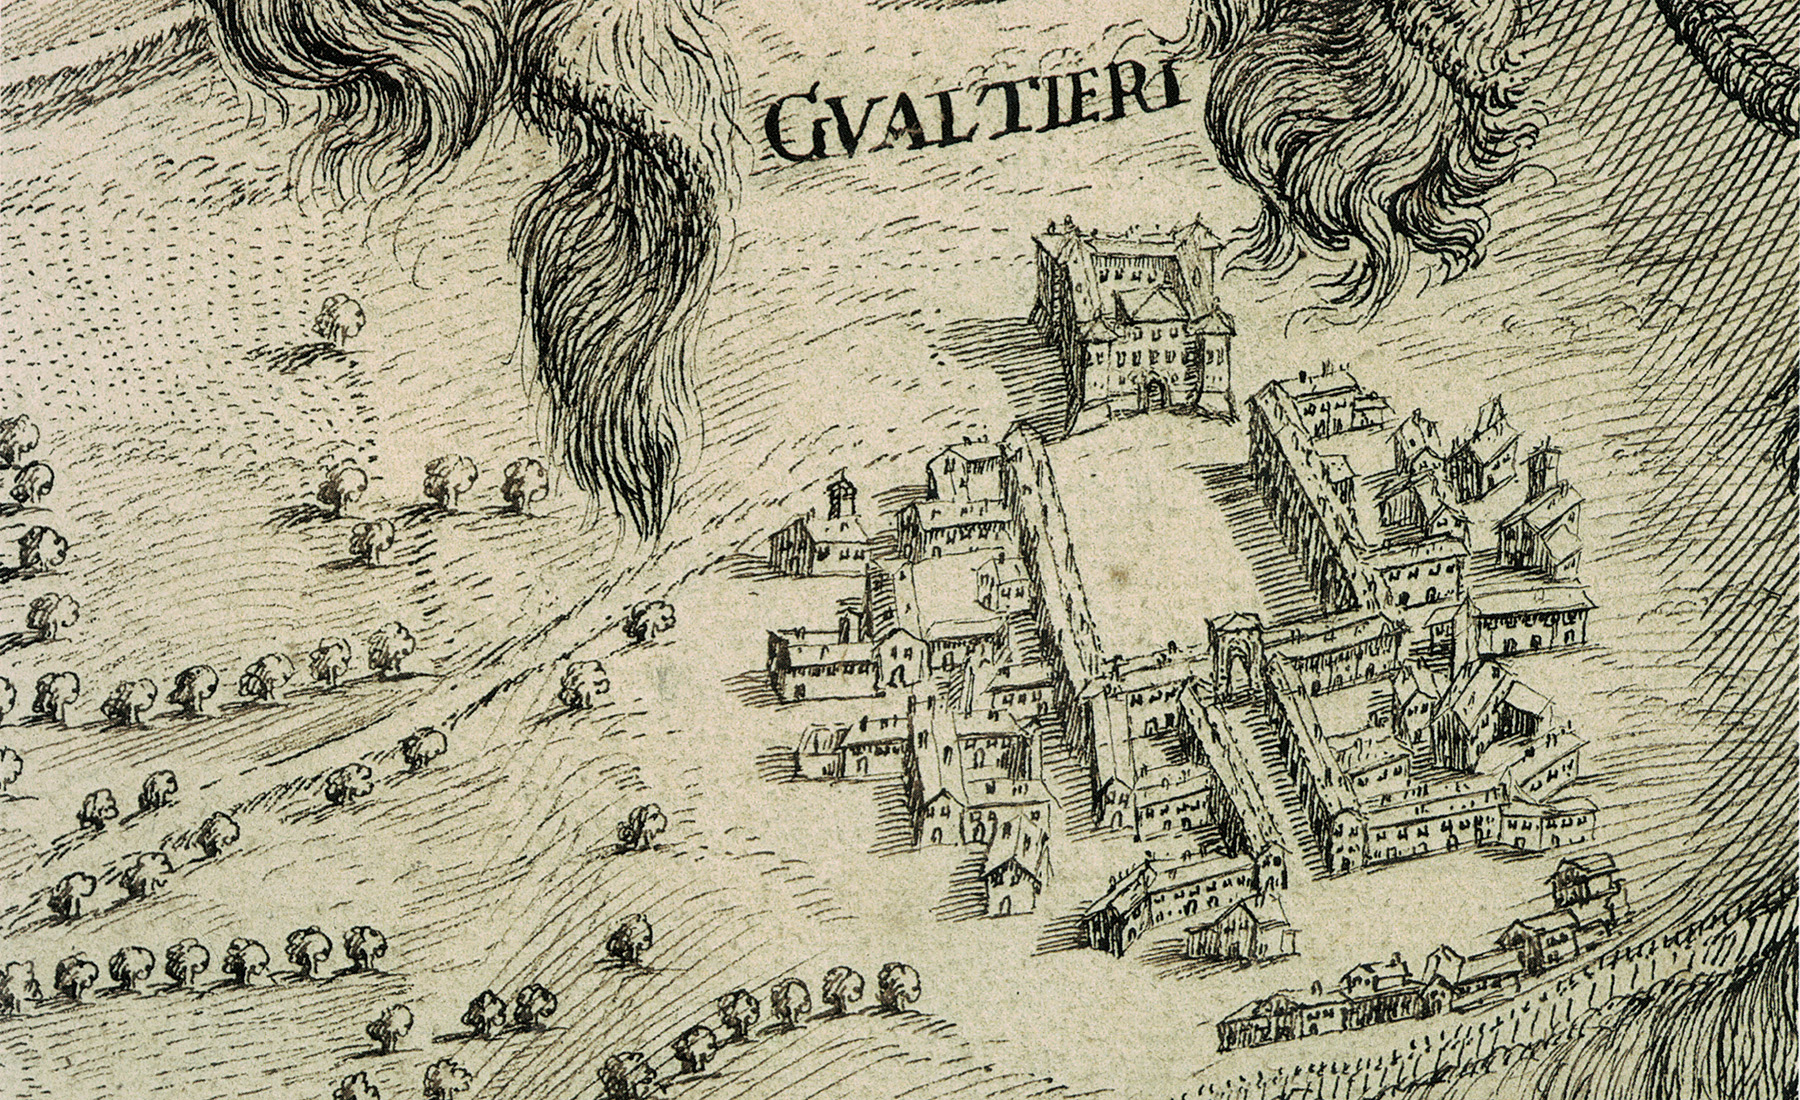 Teatro Sociale Gualtieri – Mappario Estense – Pianta topografica fiume Po – anno 1700 – particolare 1 – 1800×1100